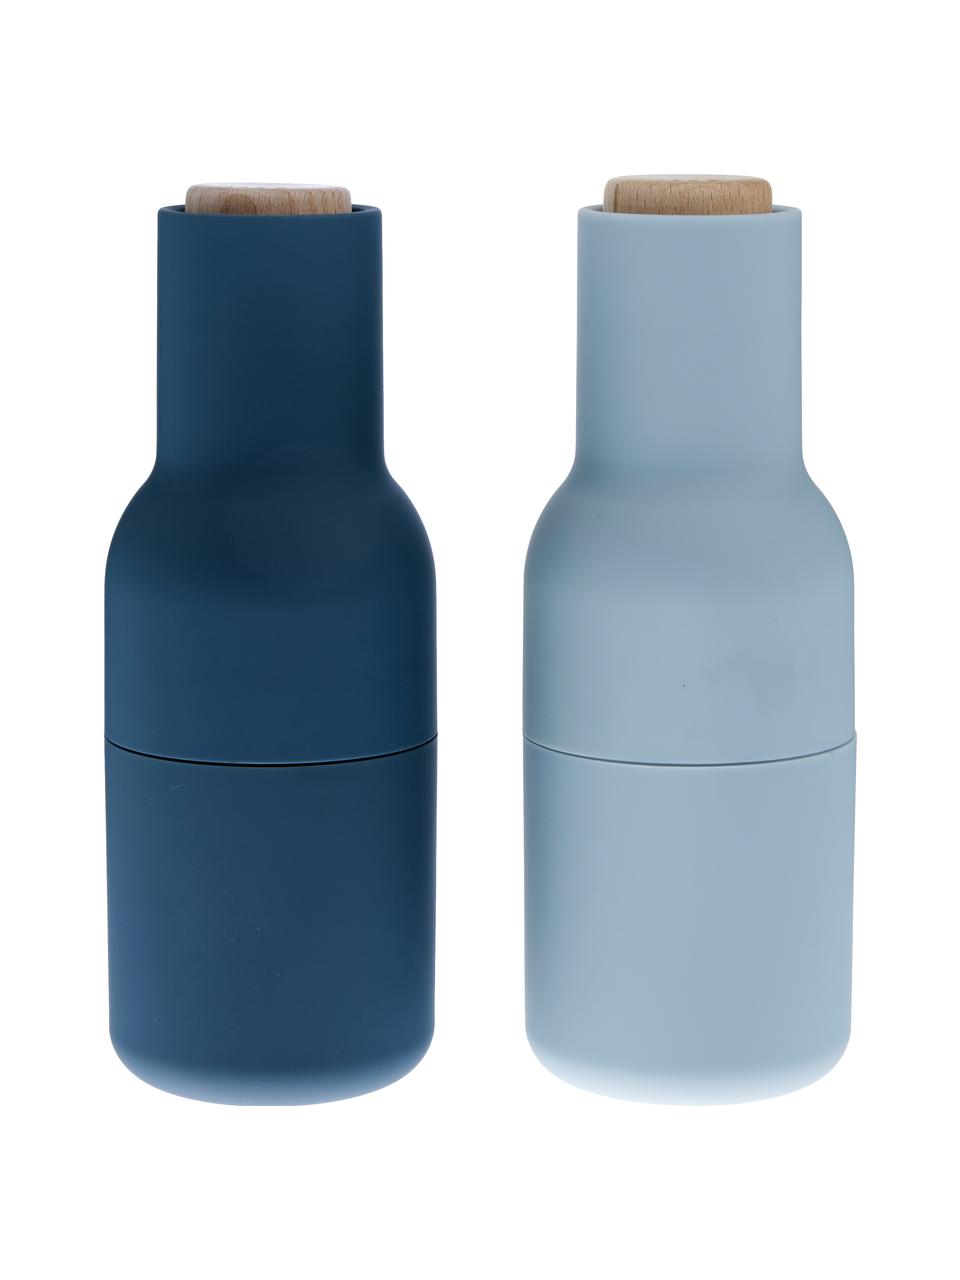 Komplet młynków do soli i pieprzu Bottle Grinder, 2 elem., Korpus: tworzywo sztuczne, Niebieski, jasny niebieski, brązowy, Ø 8 x W 21 cm